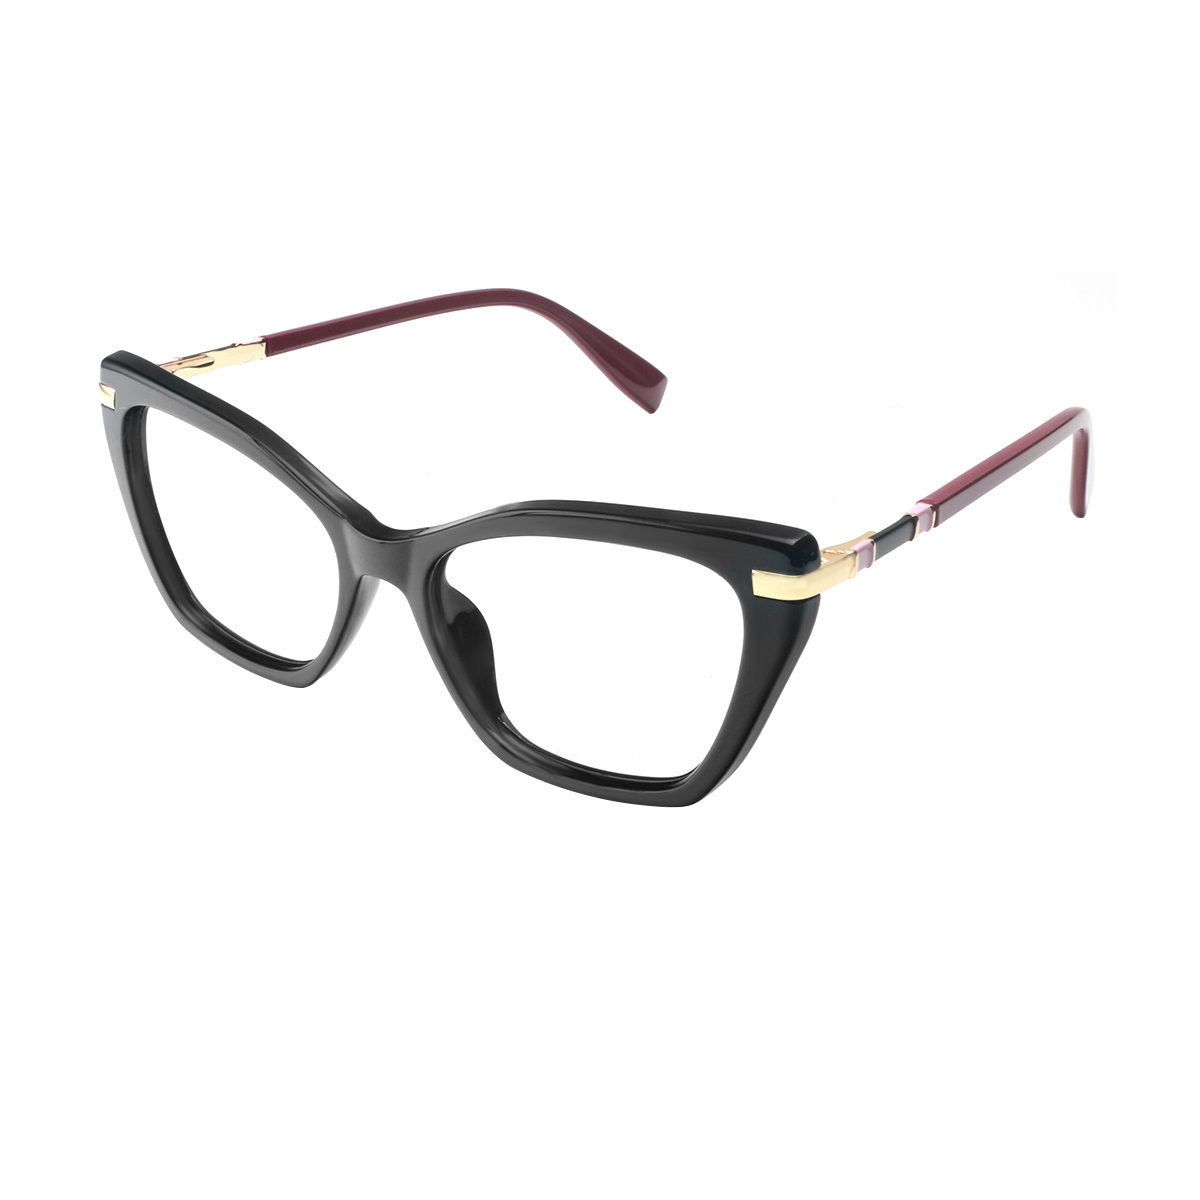 Bura - Cat-eye Black Reading Glasses for Women